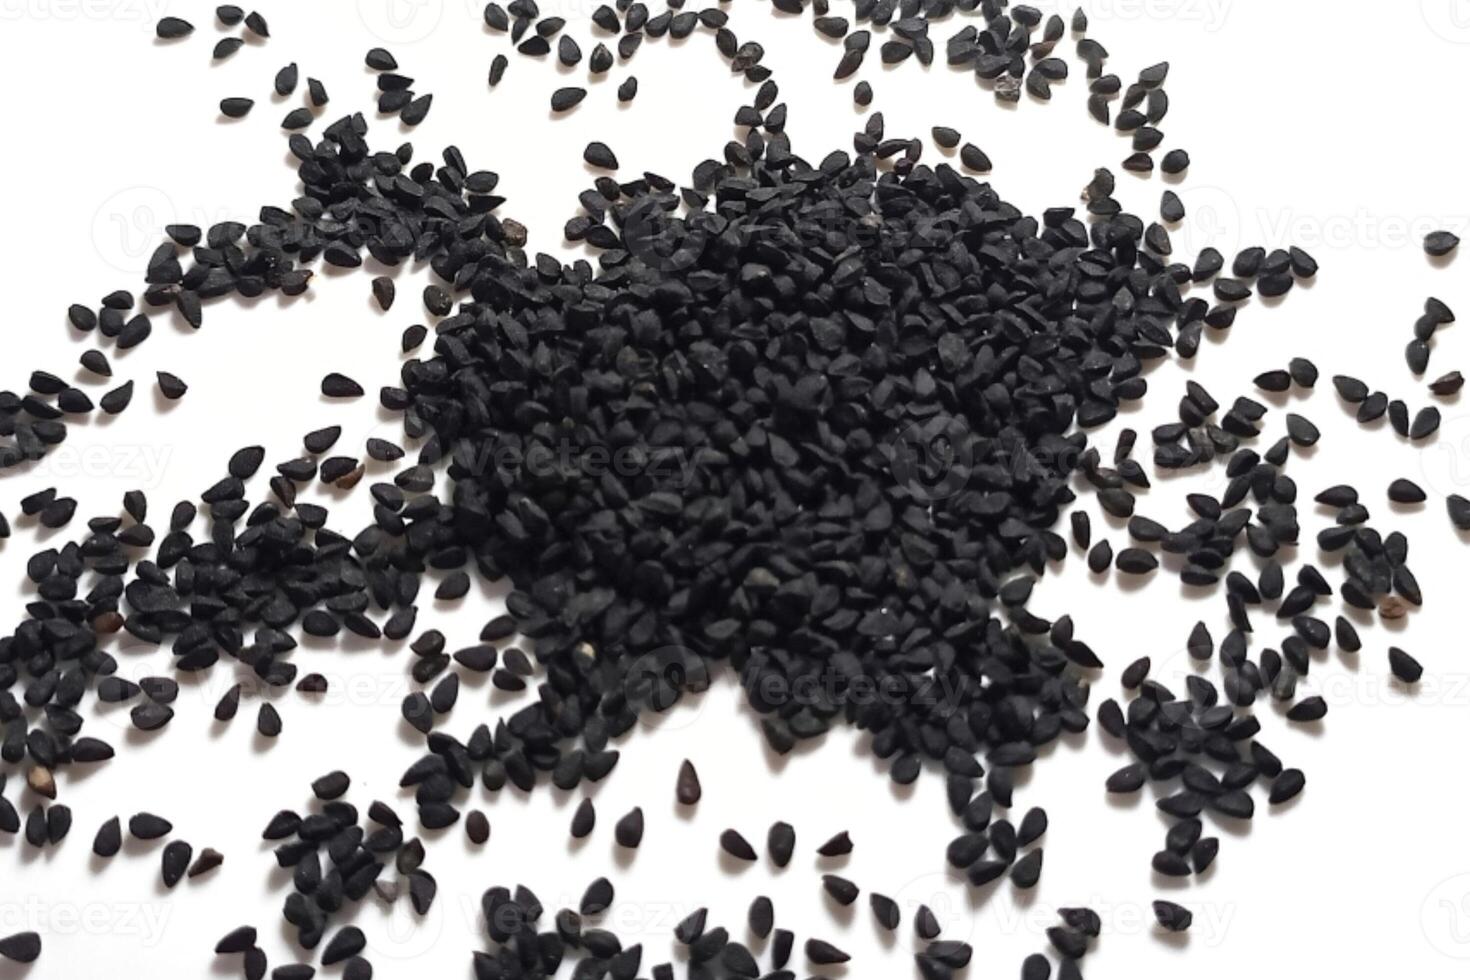 schwarz Kreuzkümmel Saat Stapel isoliert auf Weiß Hintergrund foto